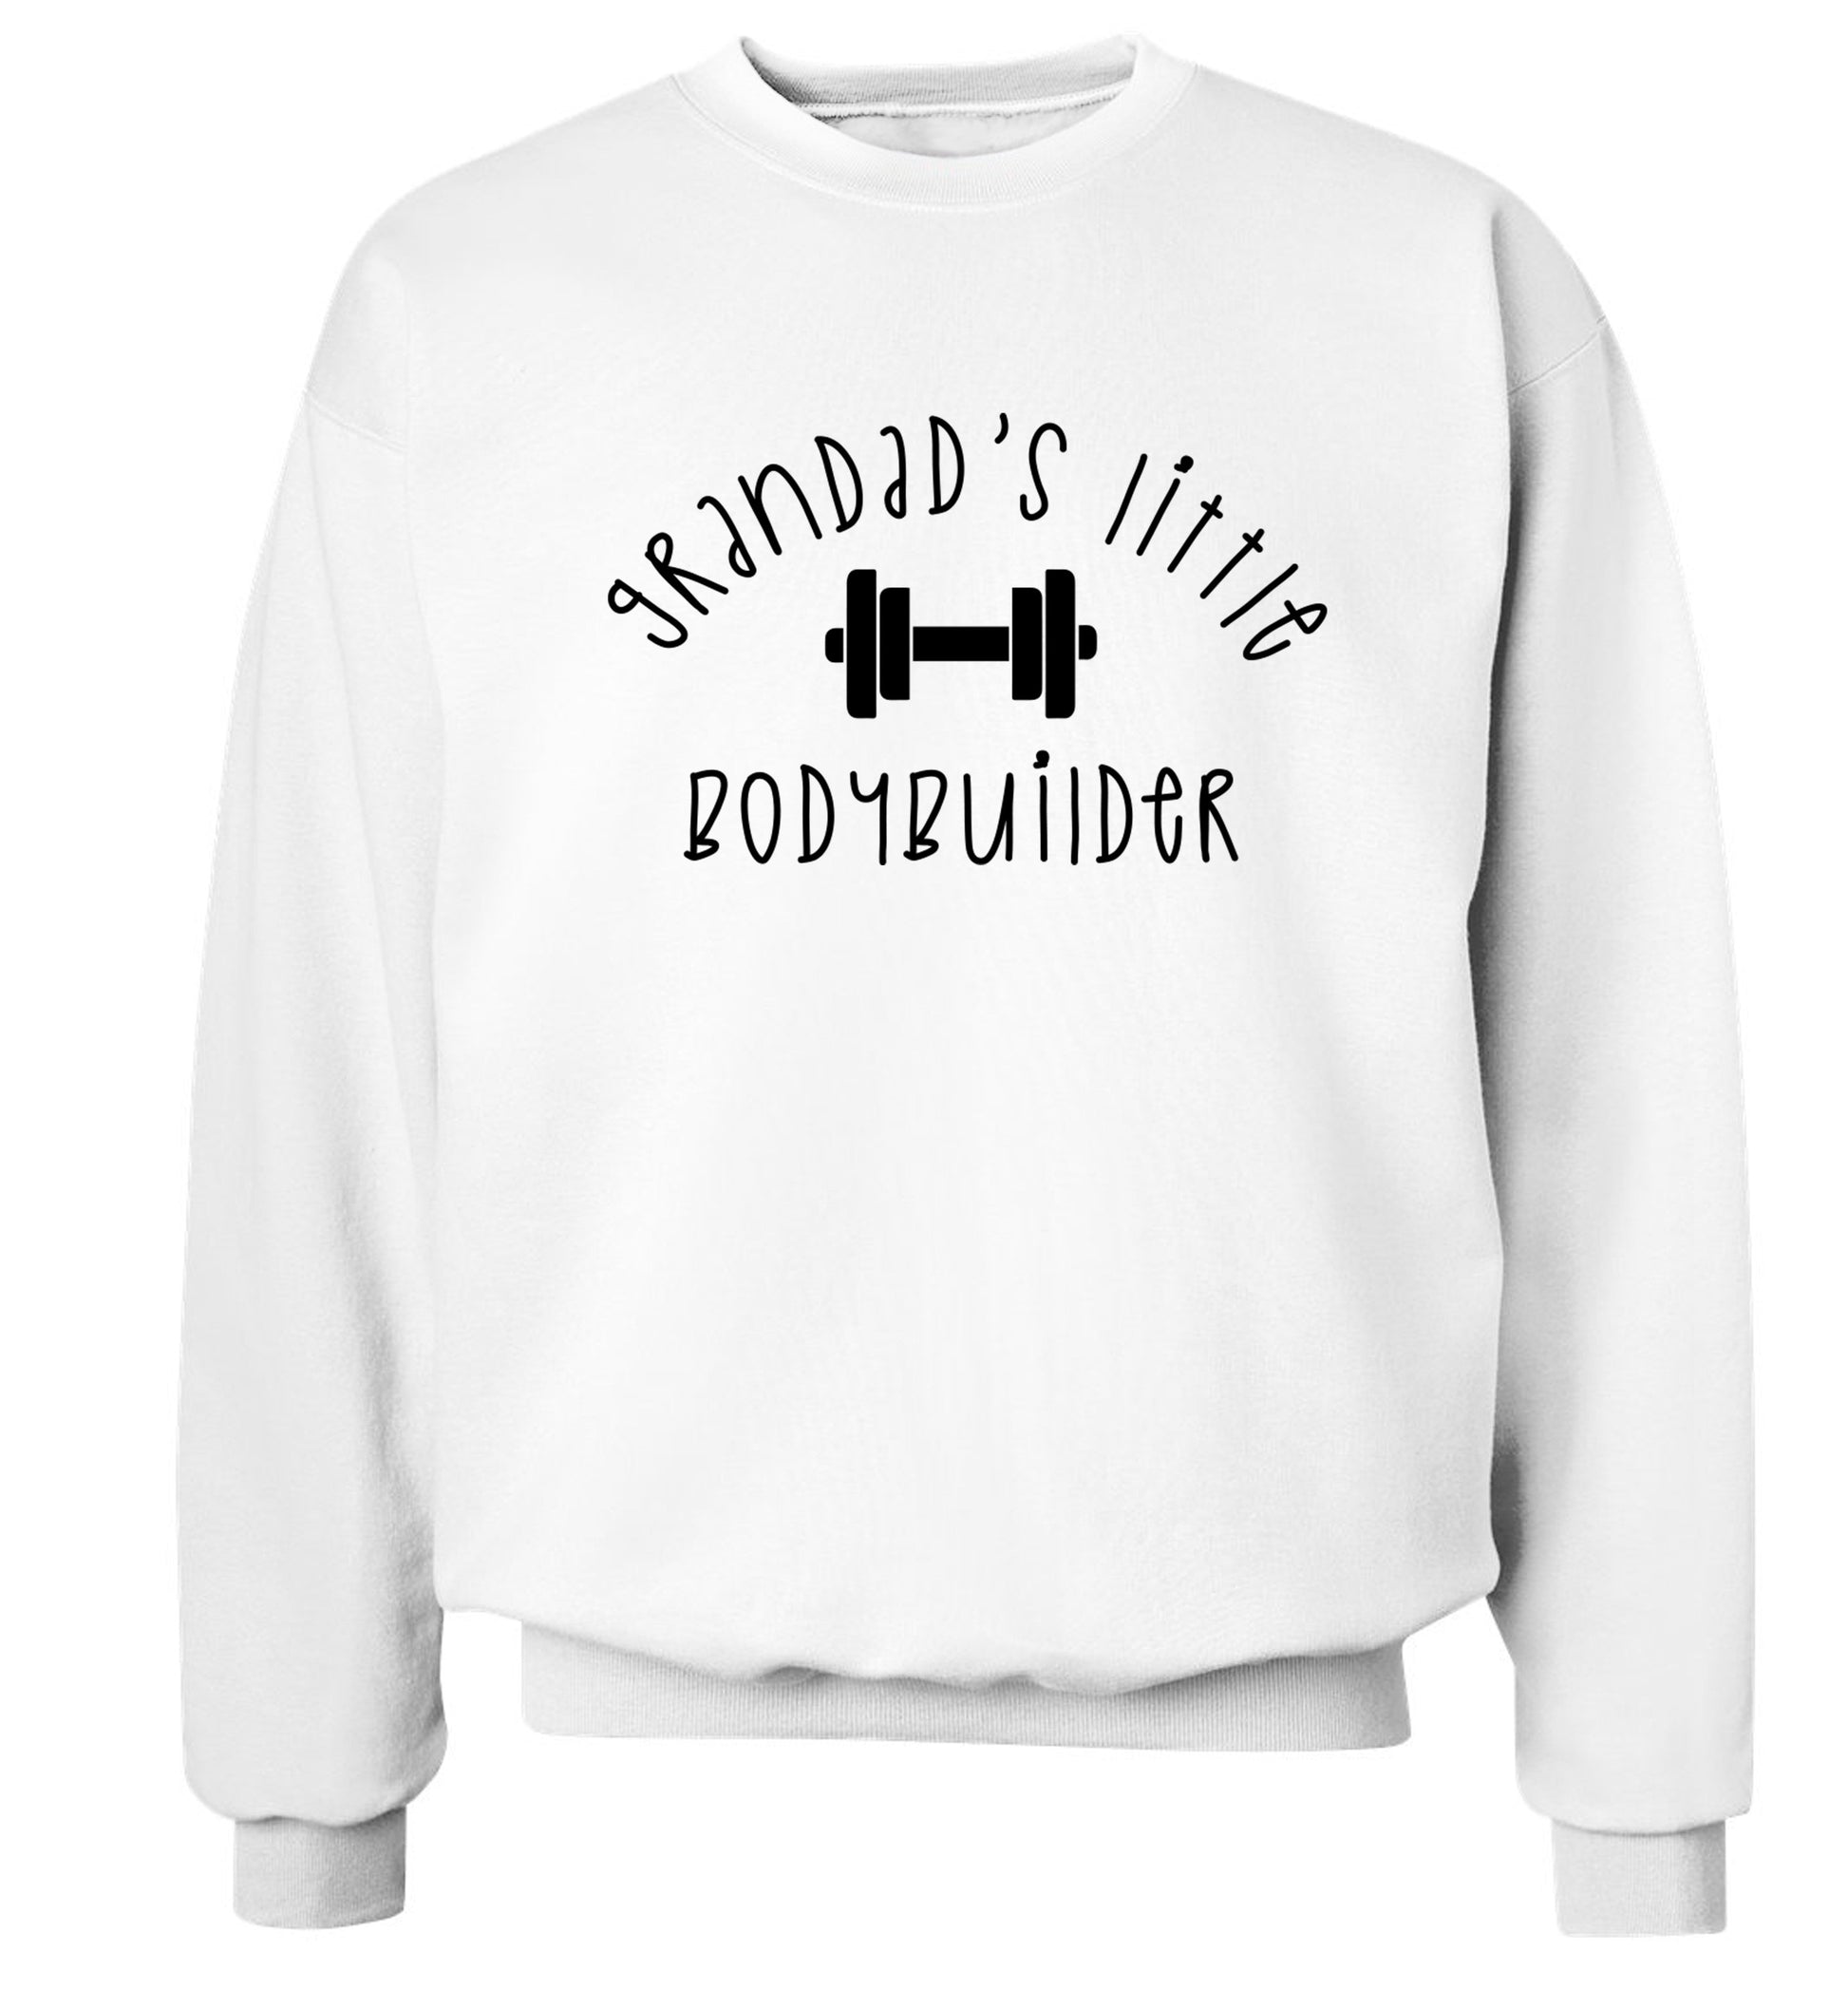 Grandad's little bodybuilder Adult's unisex white Sweater 2XL